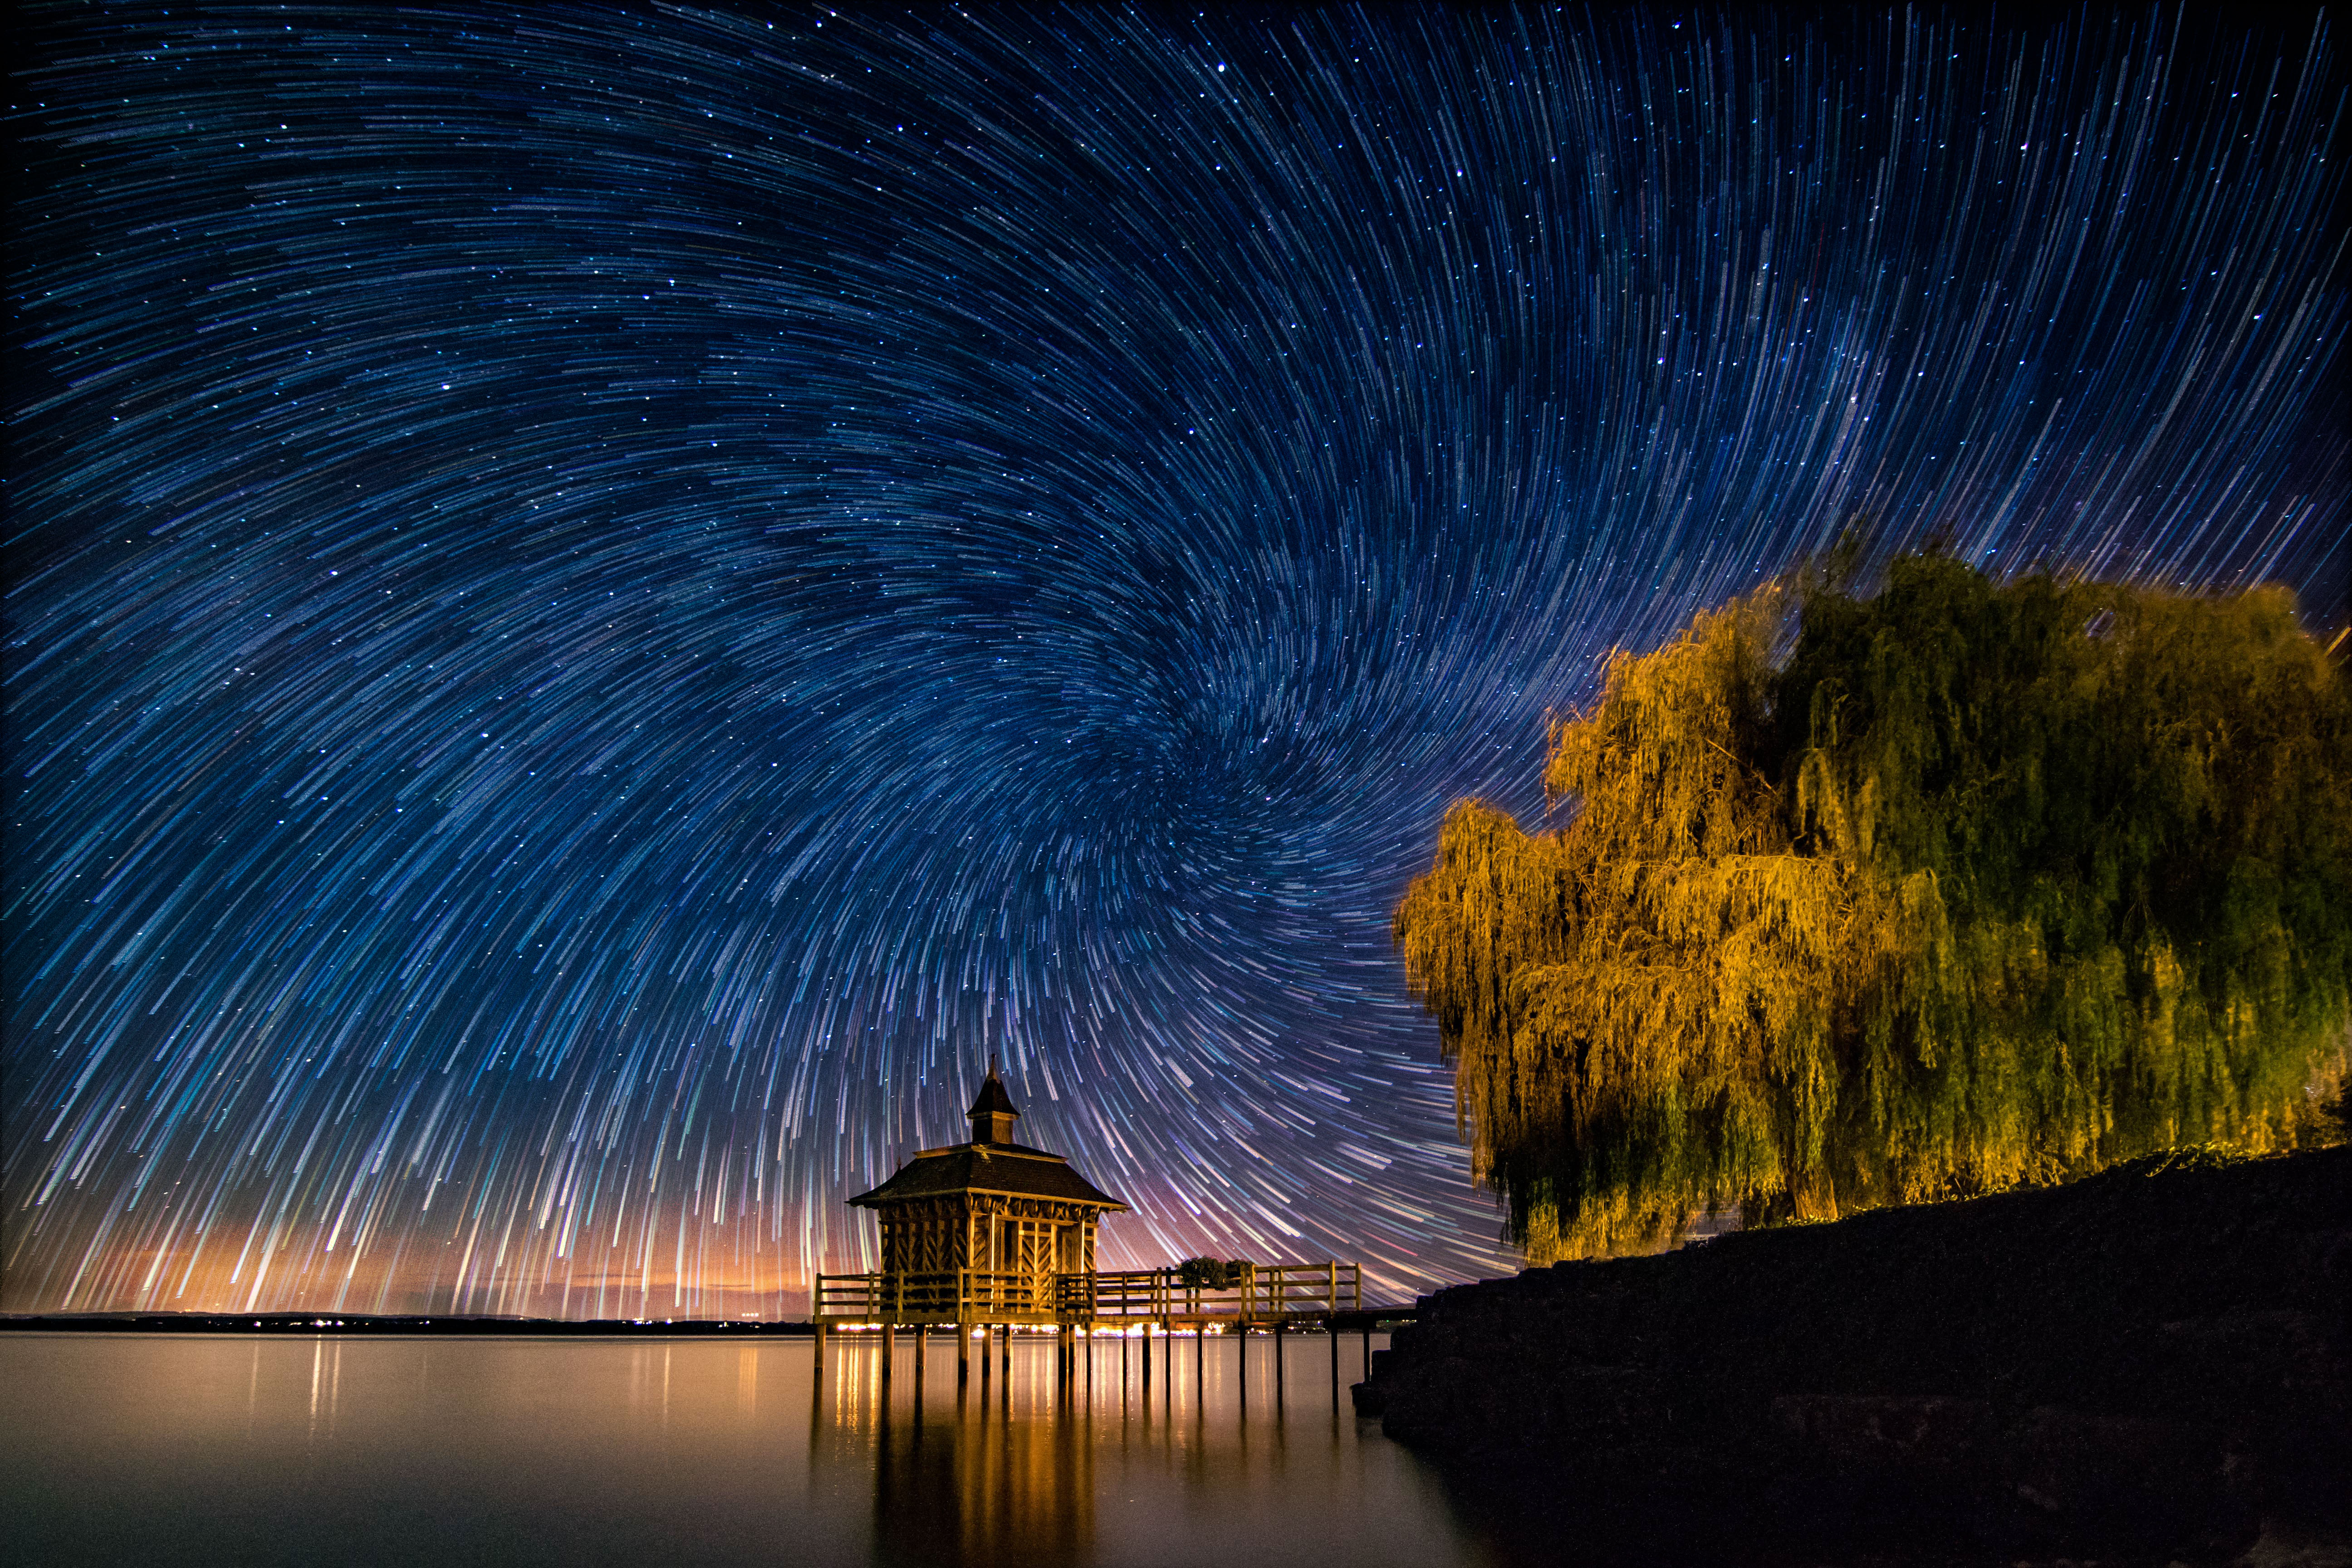 免费照片恒星漩涡 - 瑞士